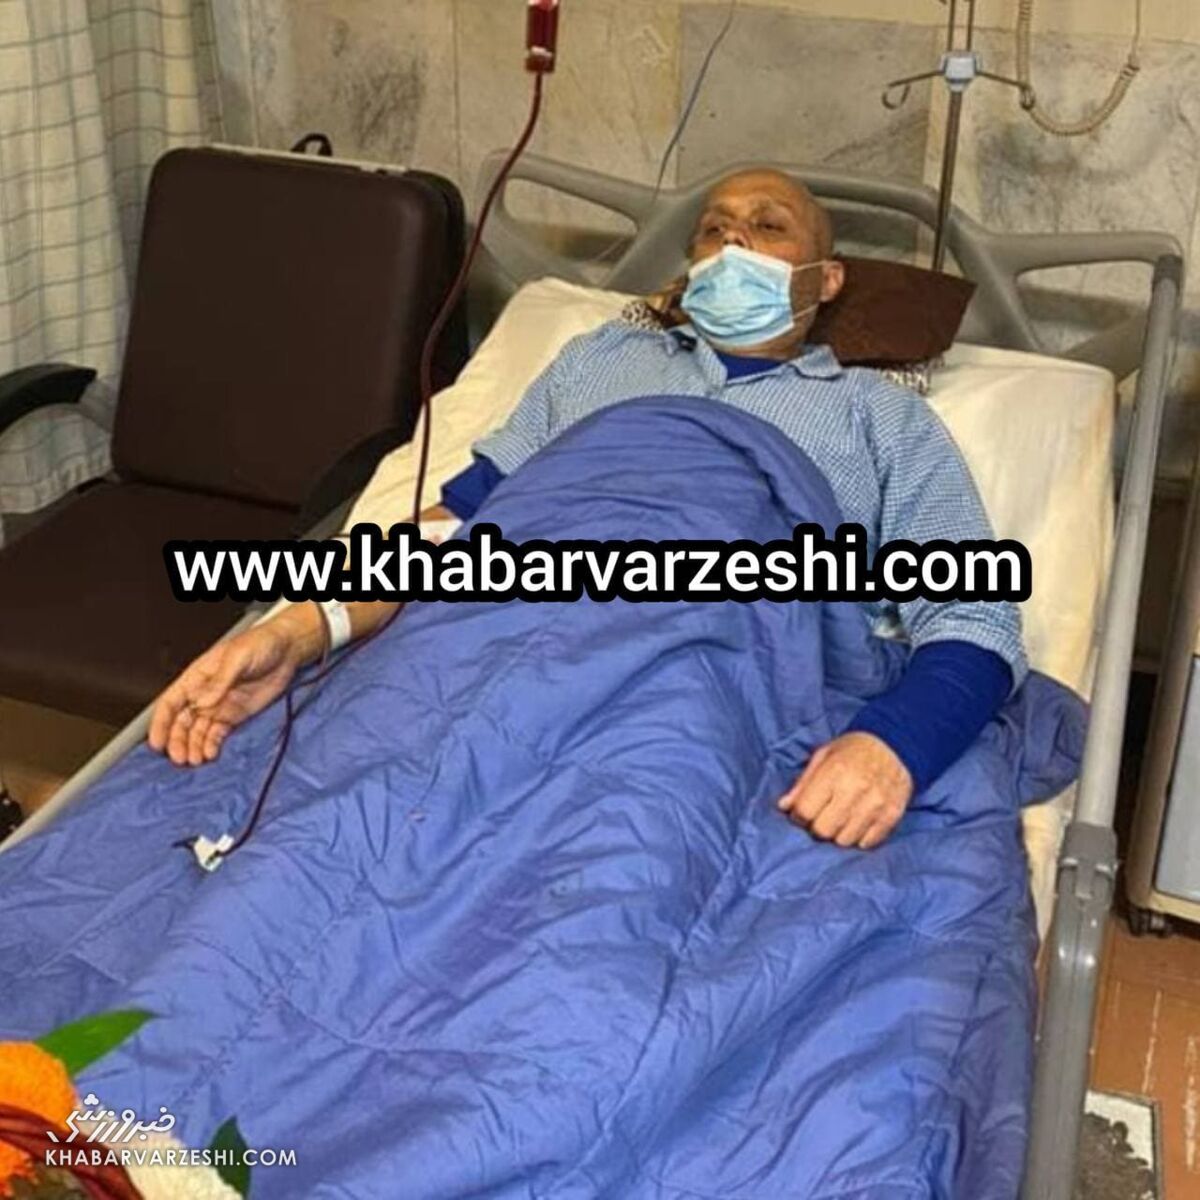 تصویری ناراحت کننده از مربی سابق استقلال در بیمارستان/ او کیسه کیسه خون تزریق می کند